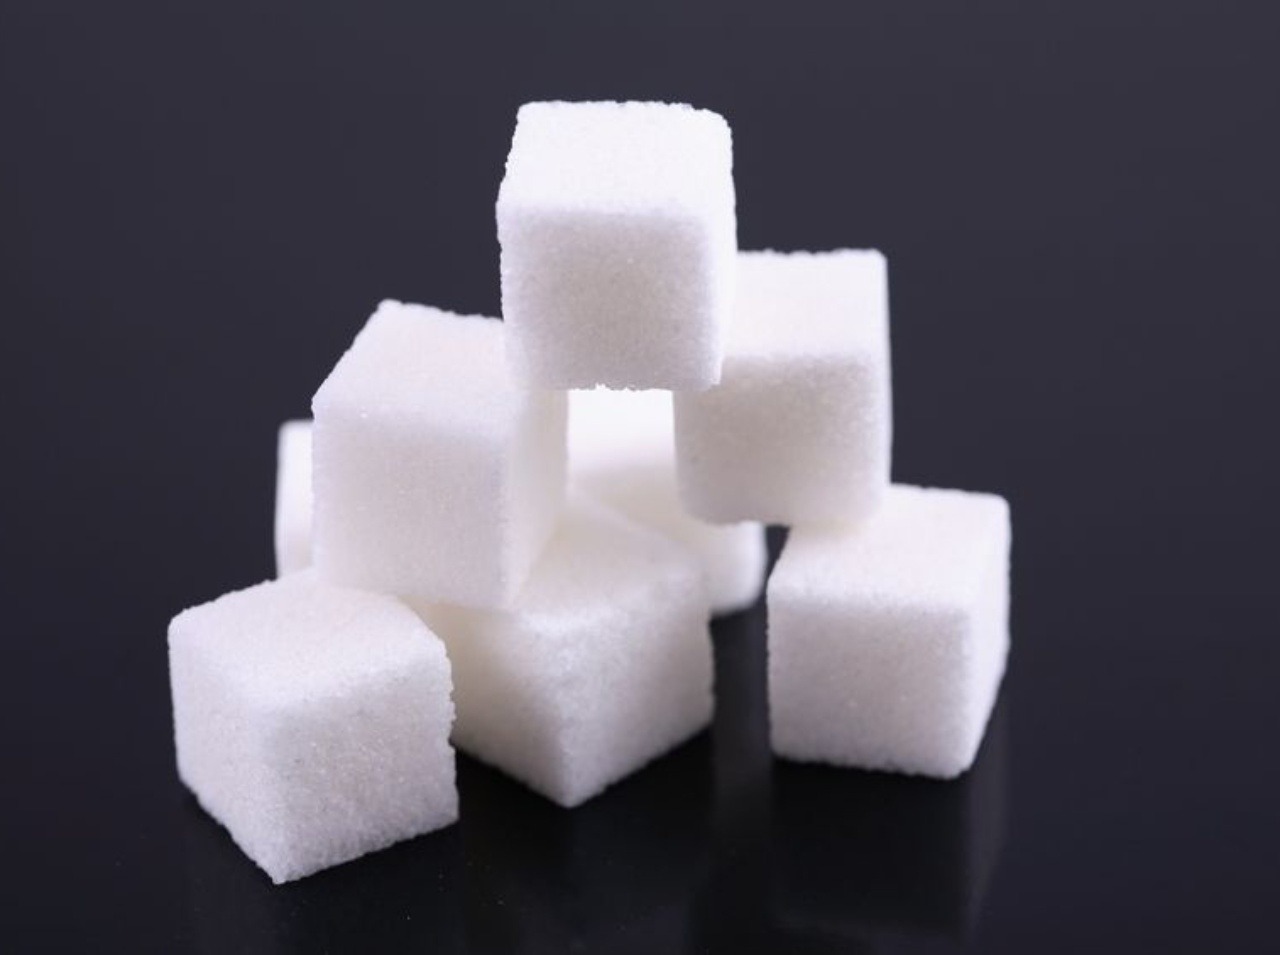 Cukor je veľmi nebezpečný, poškodzuje naše zdravie.